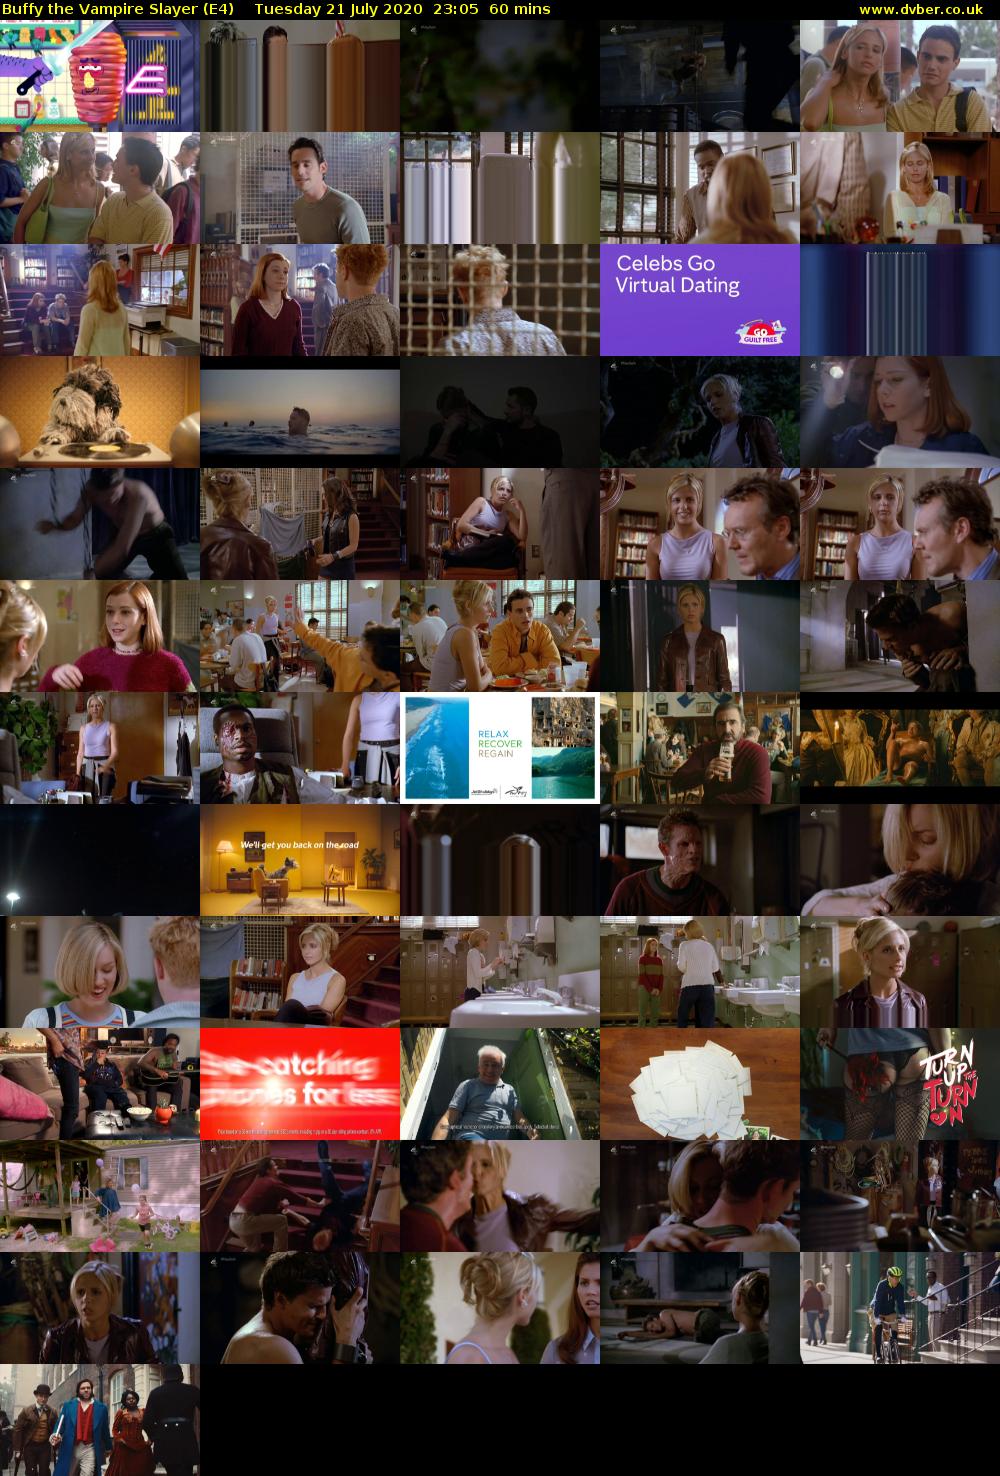 Buffy the Vampire Slayer (E4) Tuesday 21 July 2020 23:05 - 00:05